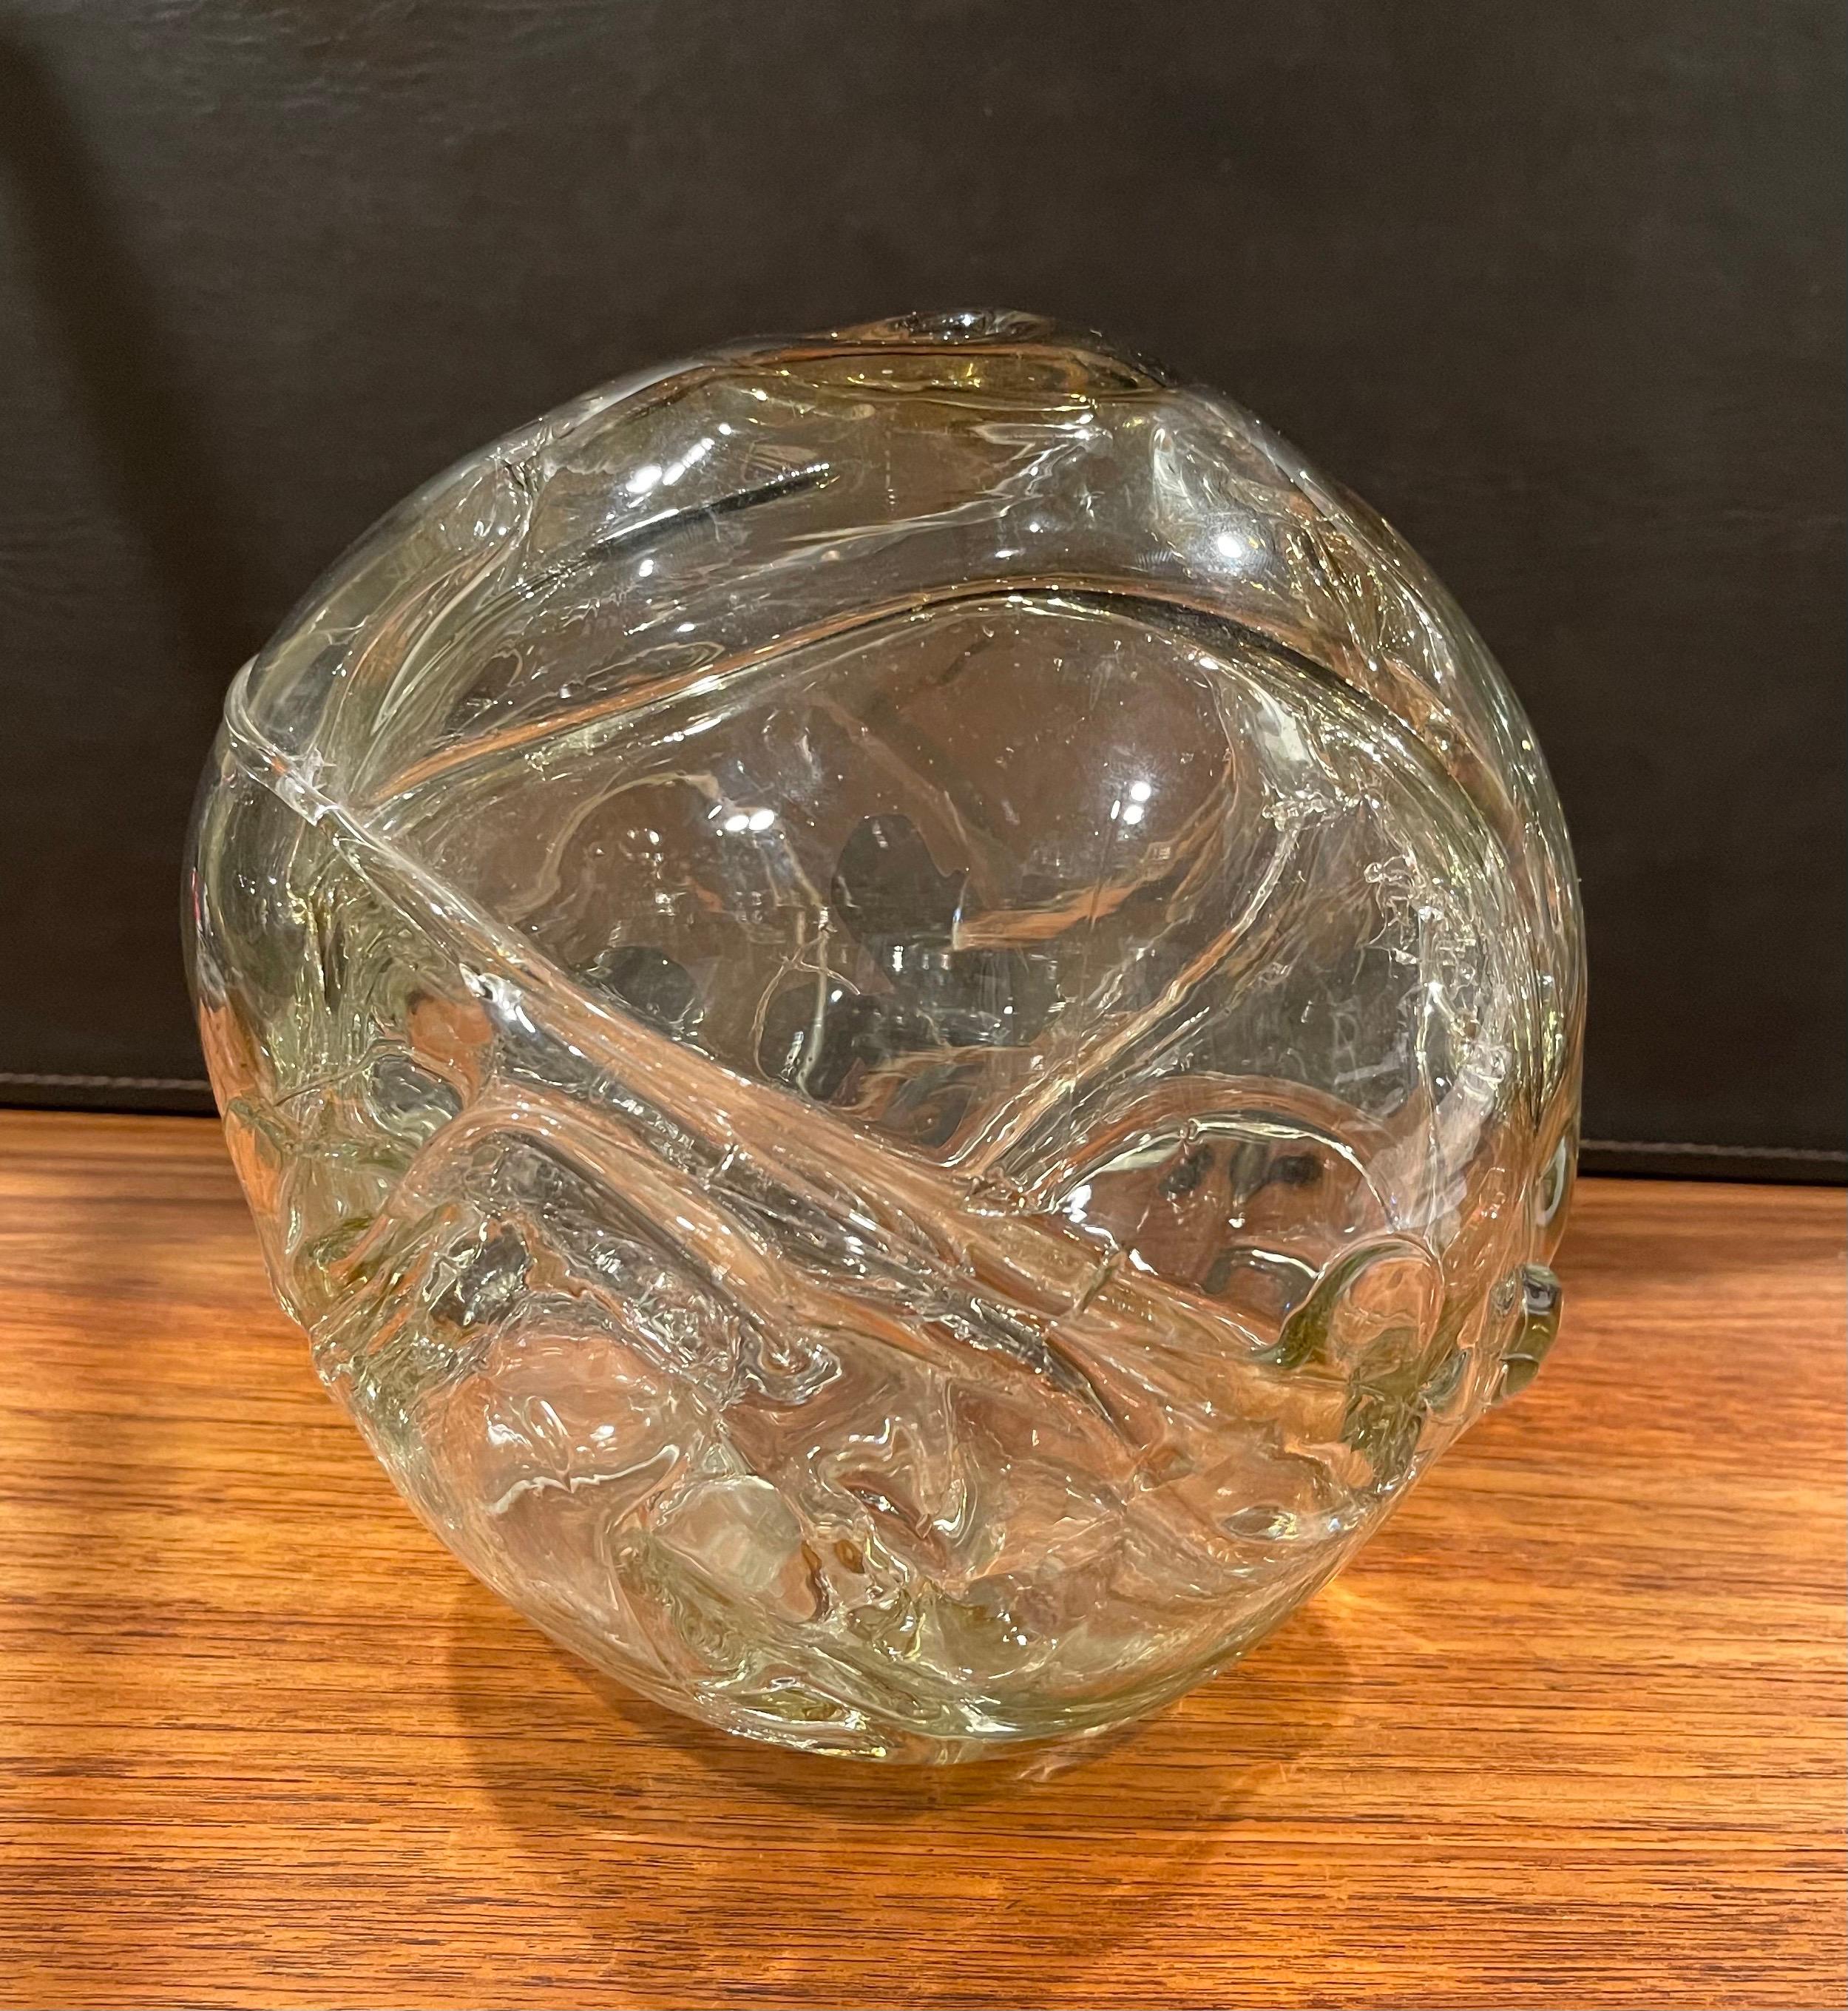 Très ancien grand vase orb en verre d'art transparent freestyle de Peter Bramhall, vers 1972. Cette sculpture orbe en verre soufflé à la main a un design biomorphique de forme libre et est en très bon état, sans éclats ni fissures. La pièce mesure